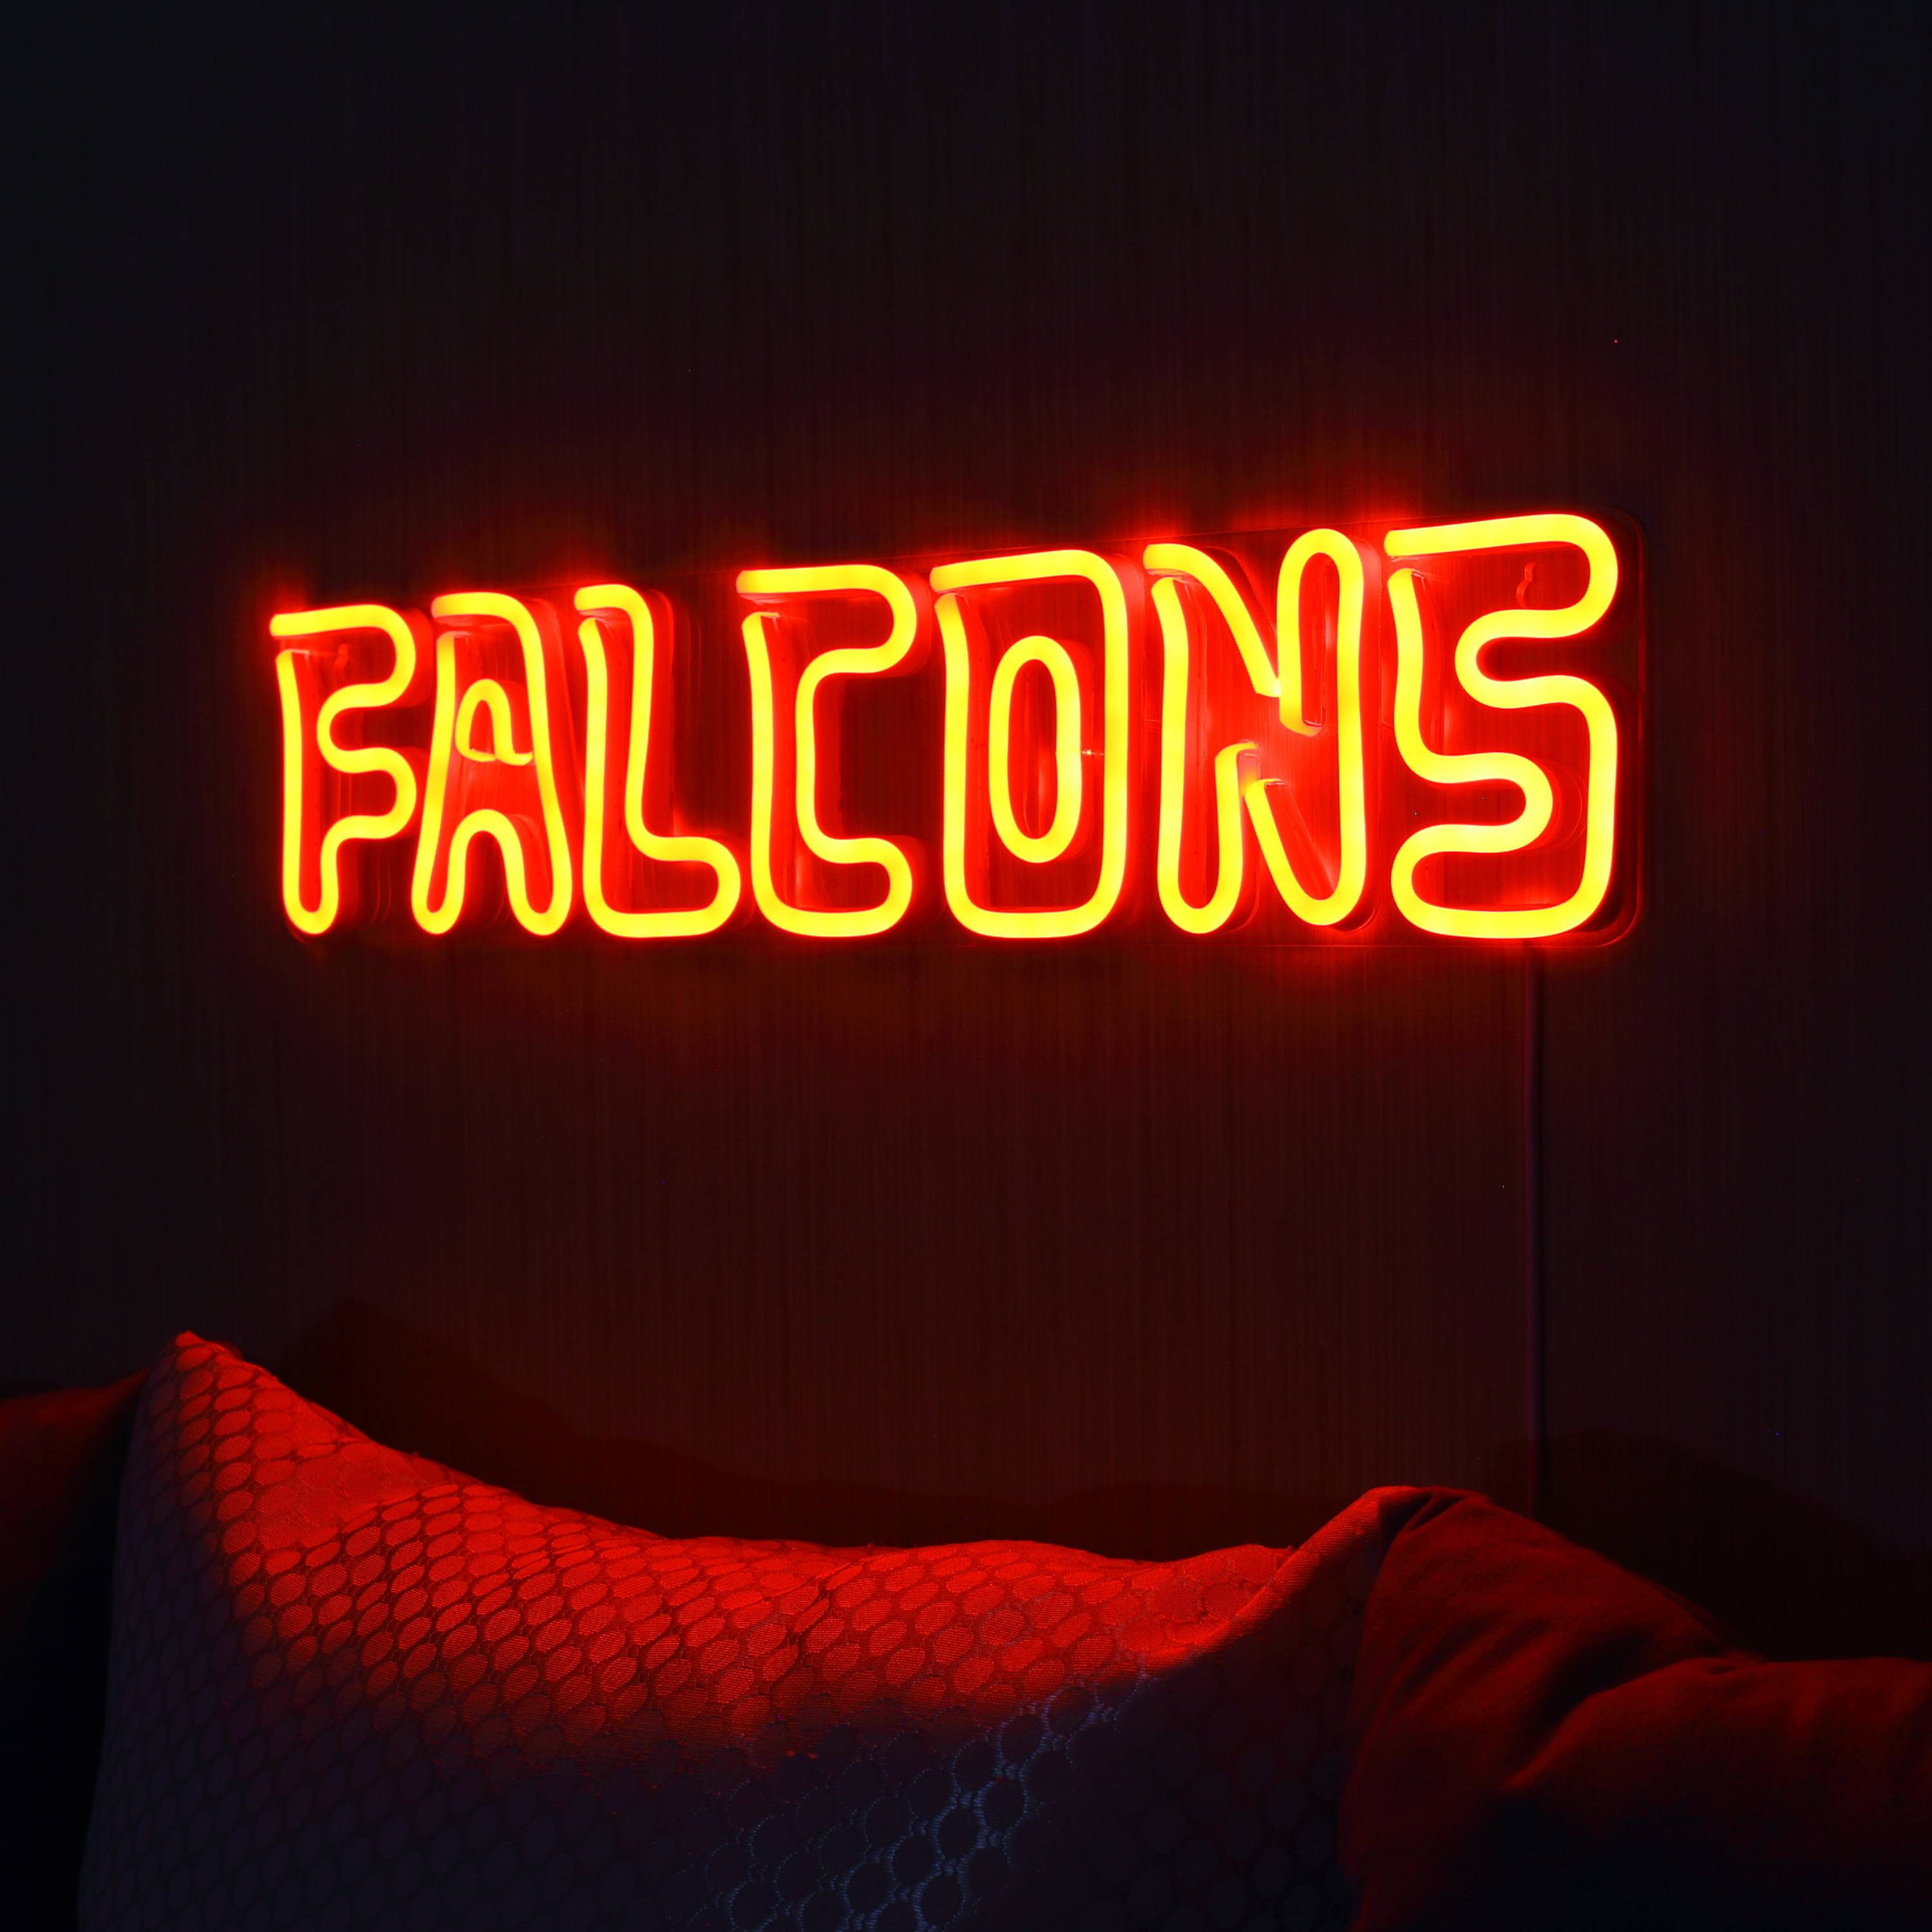 NFL FALCONS Large Flex Neon LED Sign